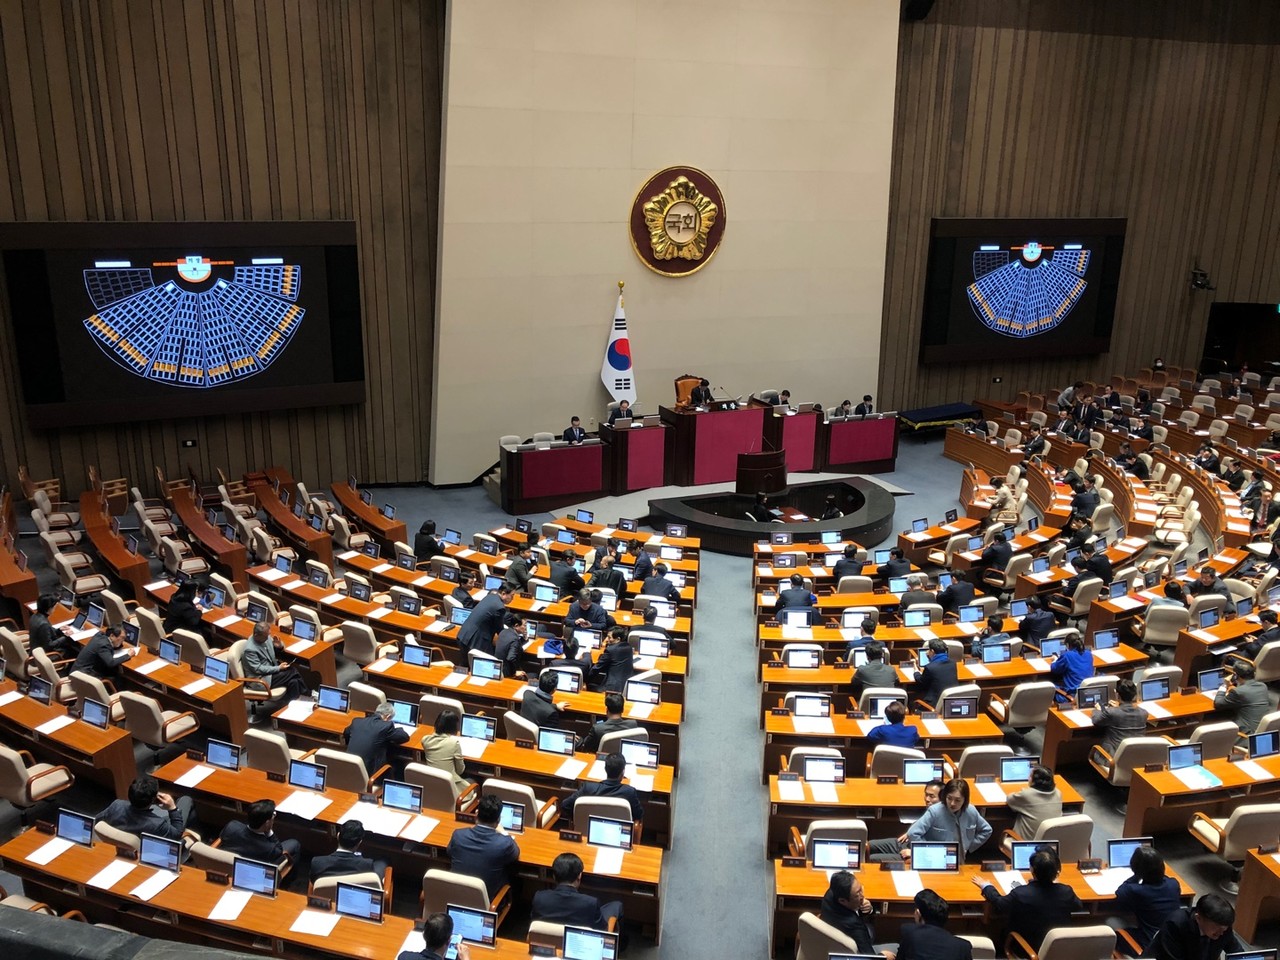 지난 2월 29일 여야가 비례대표 1석을 줄이는 대신, 전북 의석수를 10석으로 유지하는 선거구획정안에 합의했다. 사진은 이날 열린 국회 본회의 모습. 